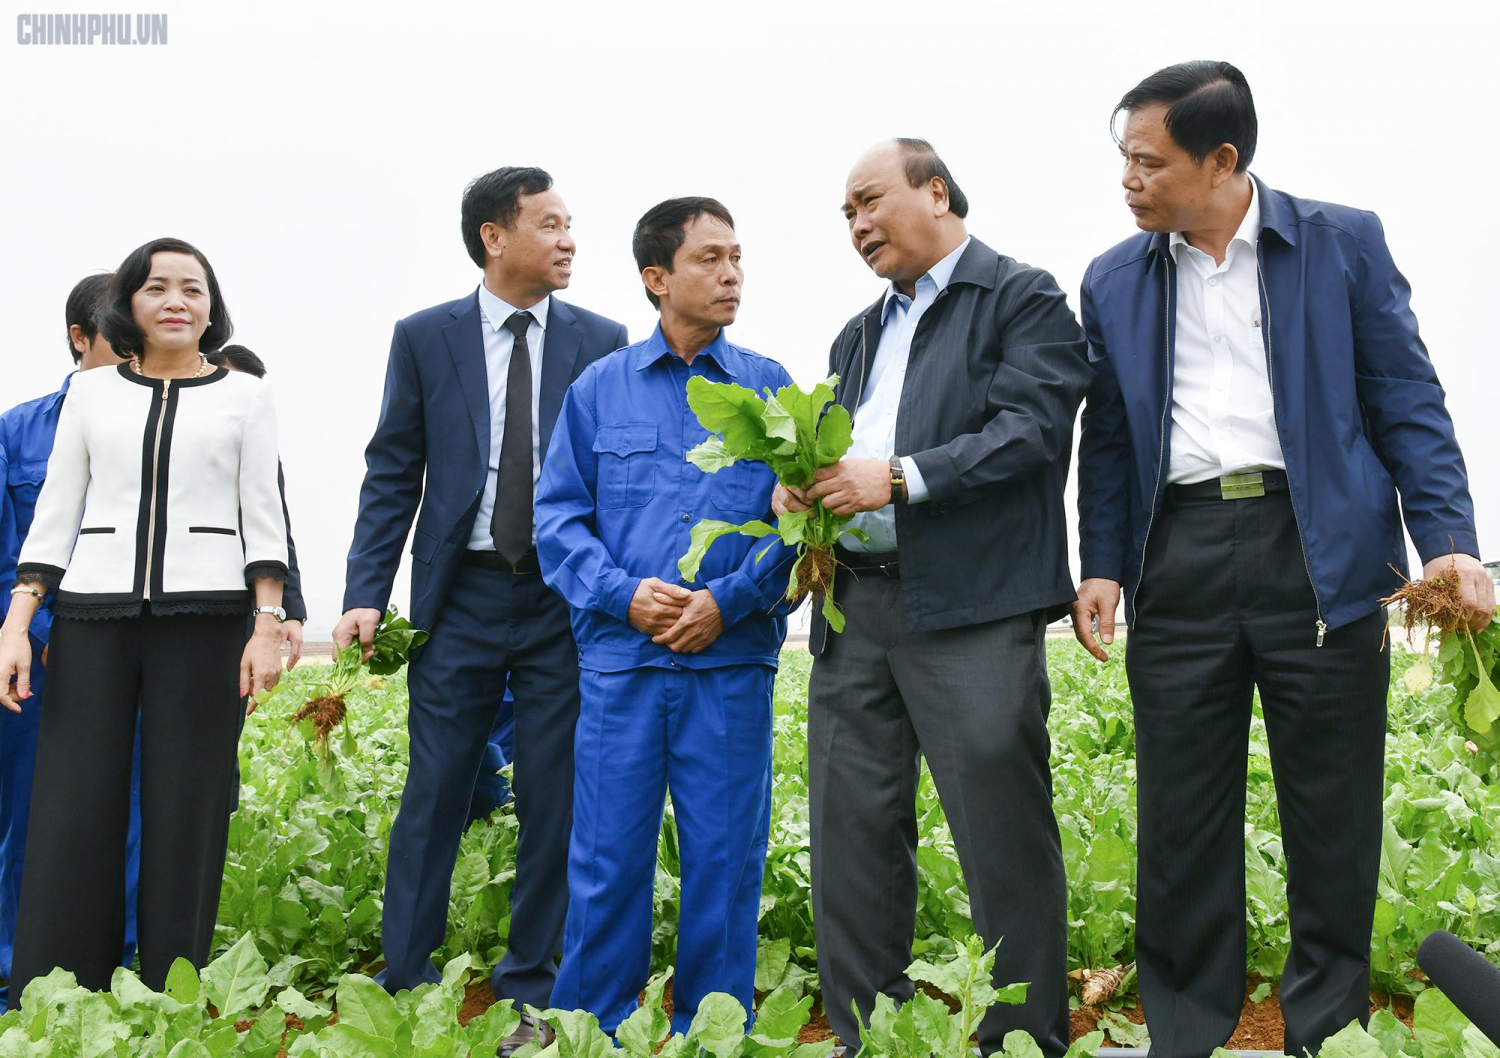 Thủ tướng Nguyễn Xuân Phúc thăm vùng nguyên liệu của DOVECO ở Đồng Giao, Tam Điệp, Ninh Bình. Ảnh: chinhphu.vn.